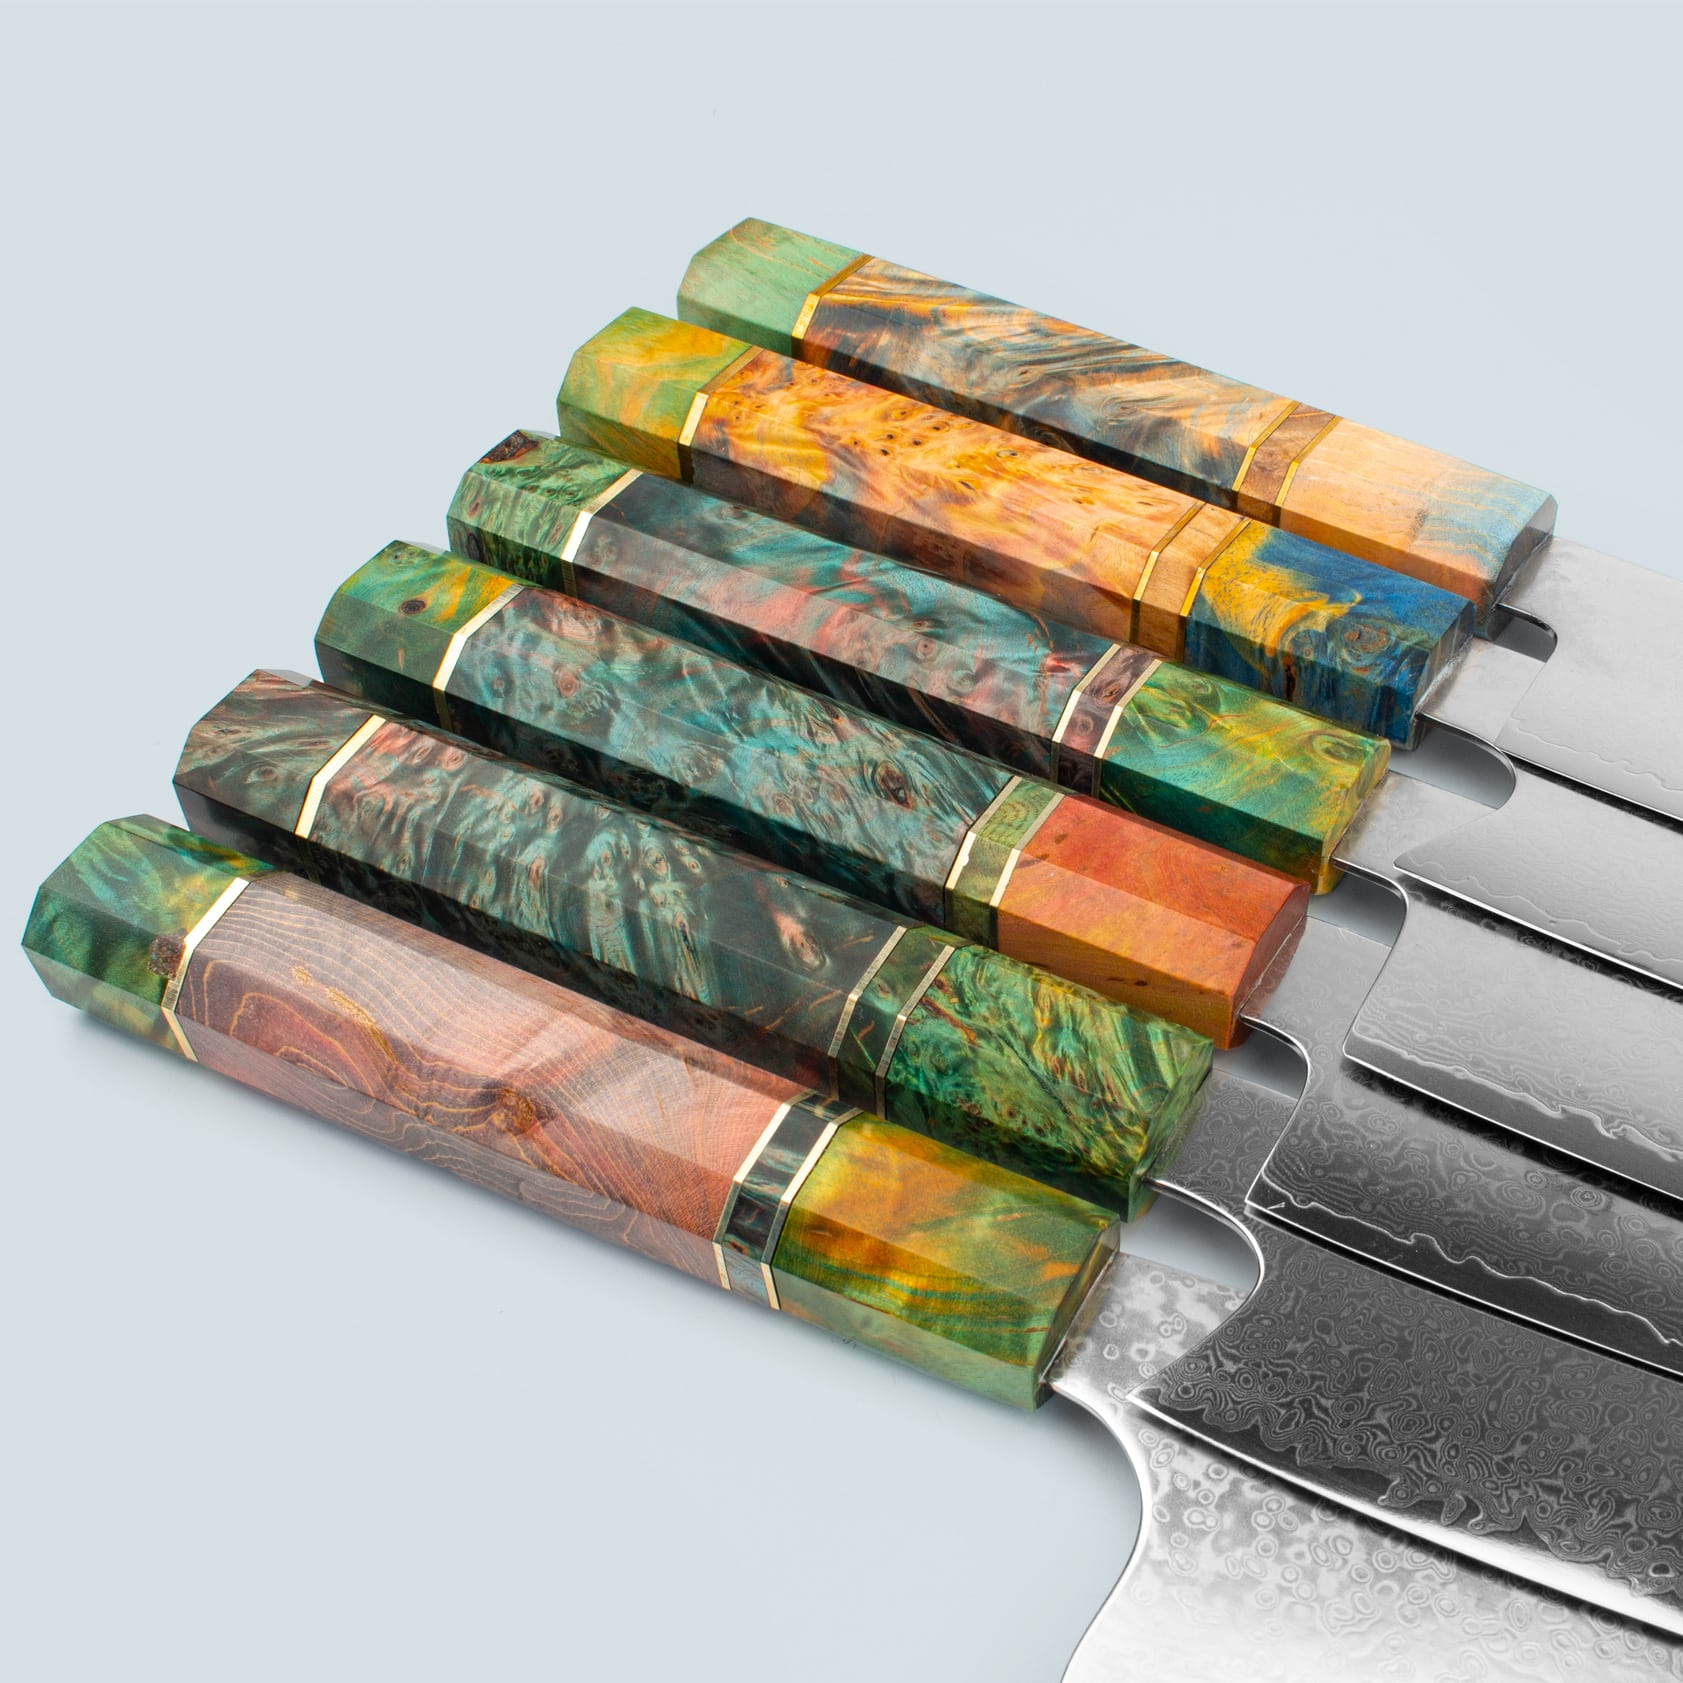 Ichika (いち か) Damaskus -Stahlmesser mit farbig achteckigem Griff